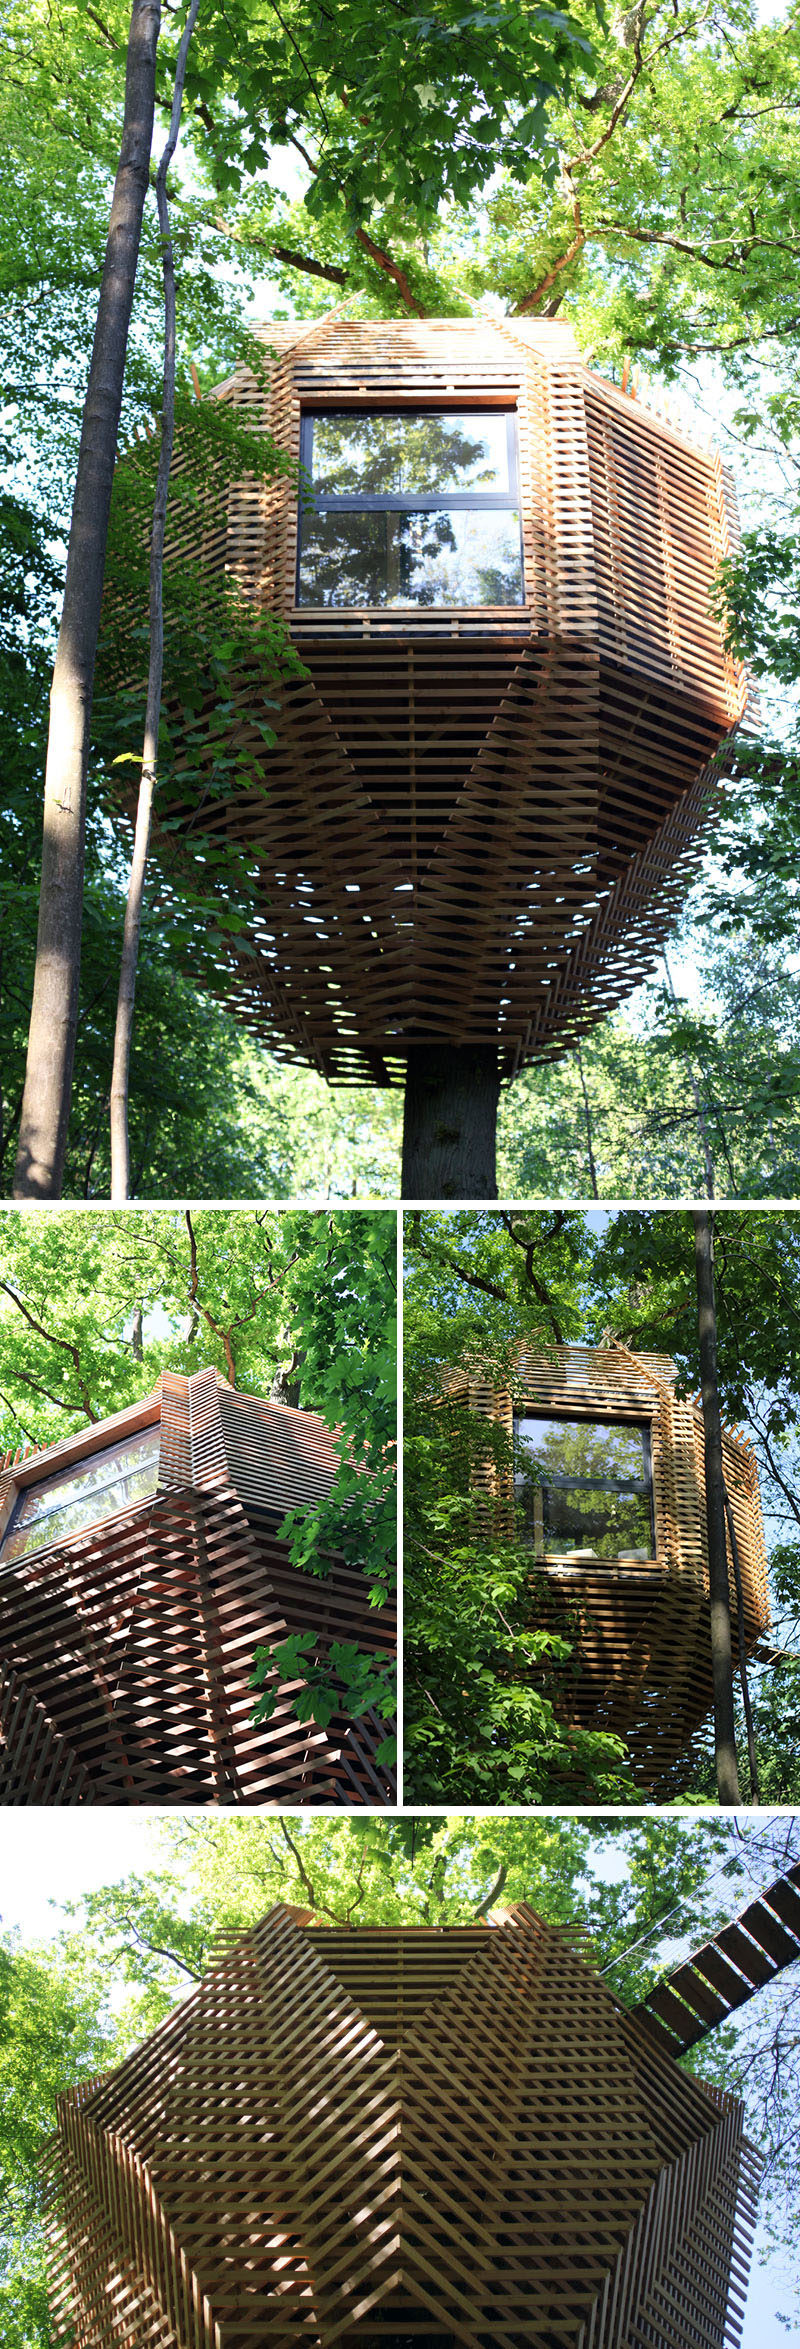 Atelier LAVIT đã thiết kế Nhà Cây gốc cho khách hàng của họ tại Pháp, những người muốn có một cabin độc đáo.  #ModernTreeHouse #TreeHouse # Kiến trúc sư